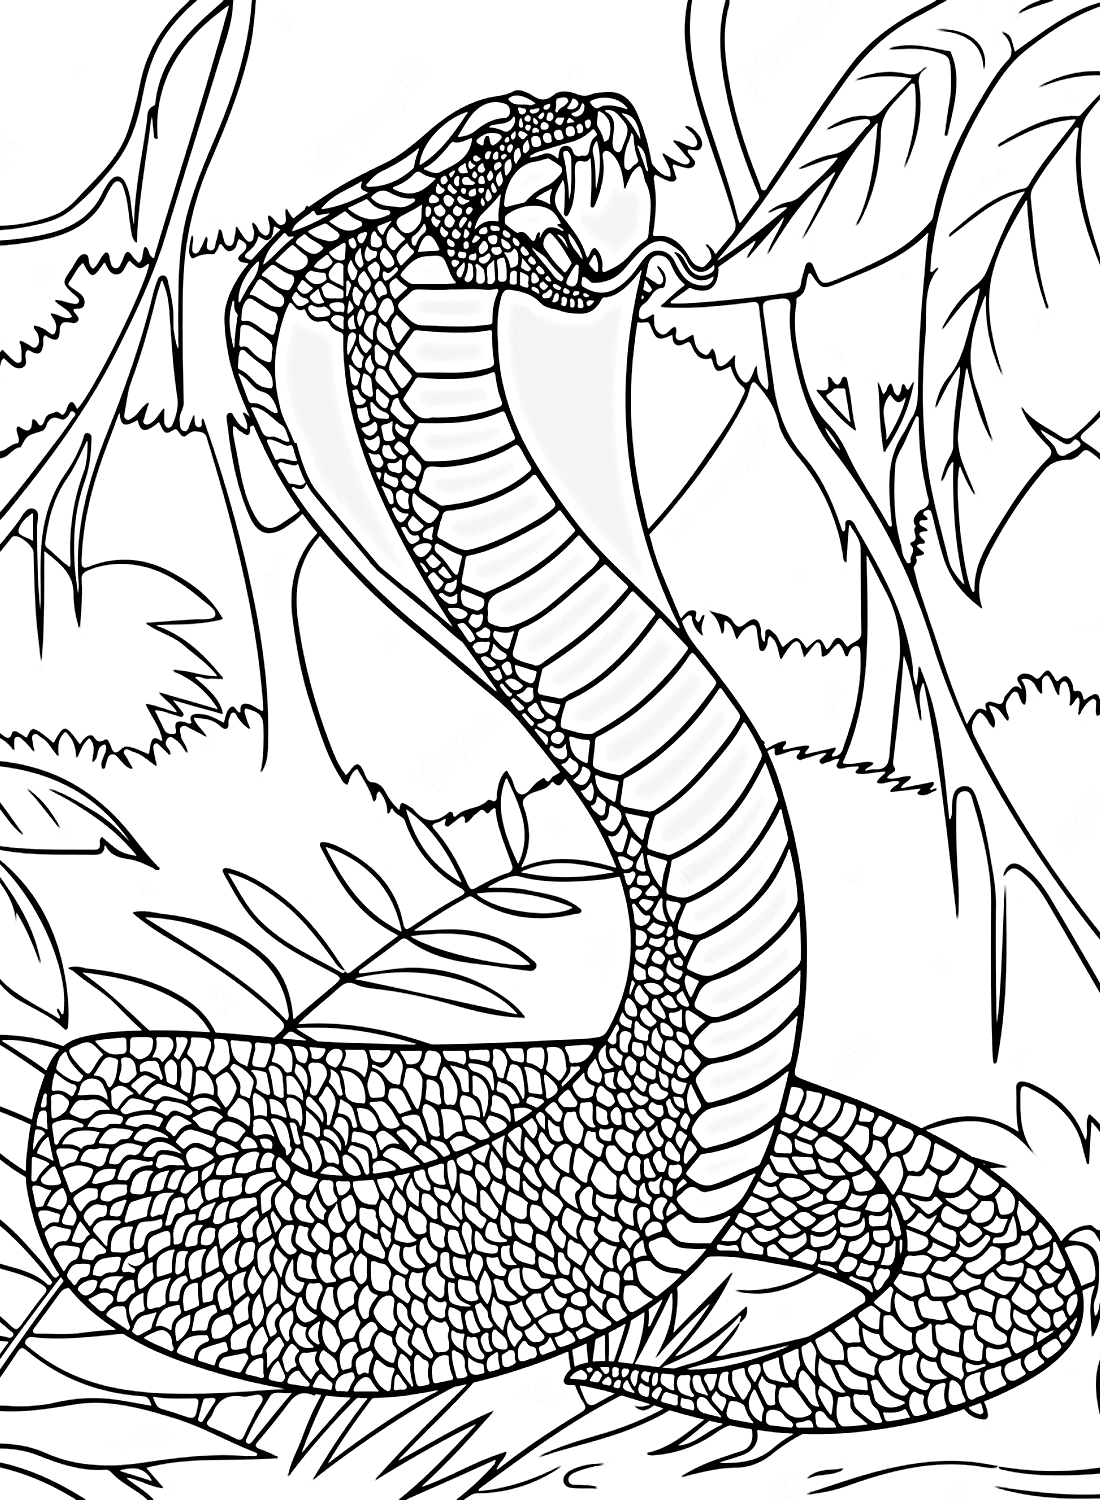 Desenho de uma cobra gigante para colorir